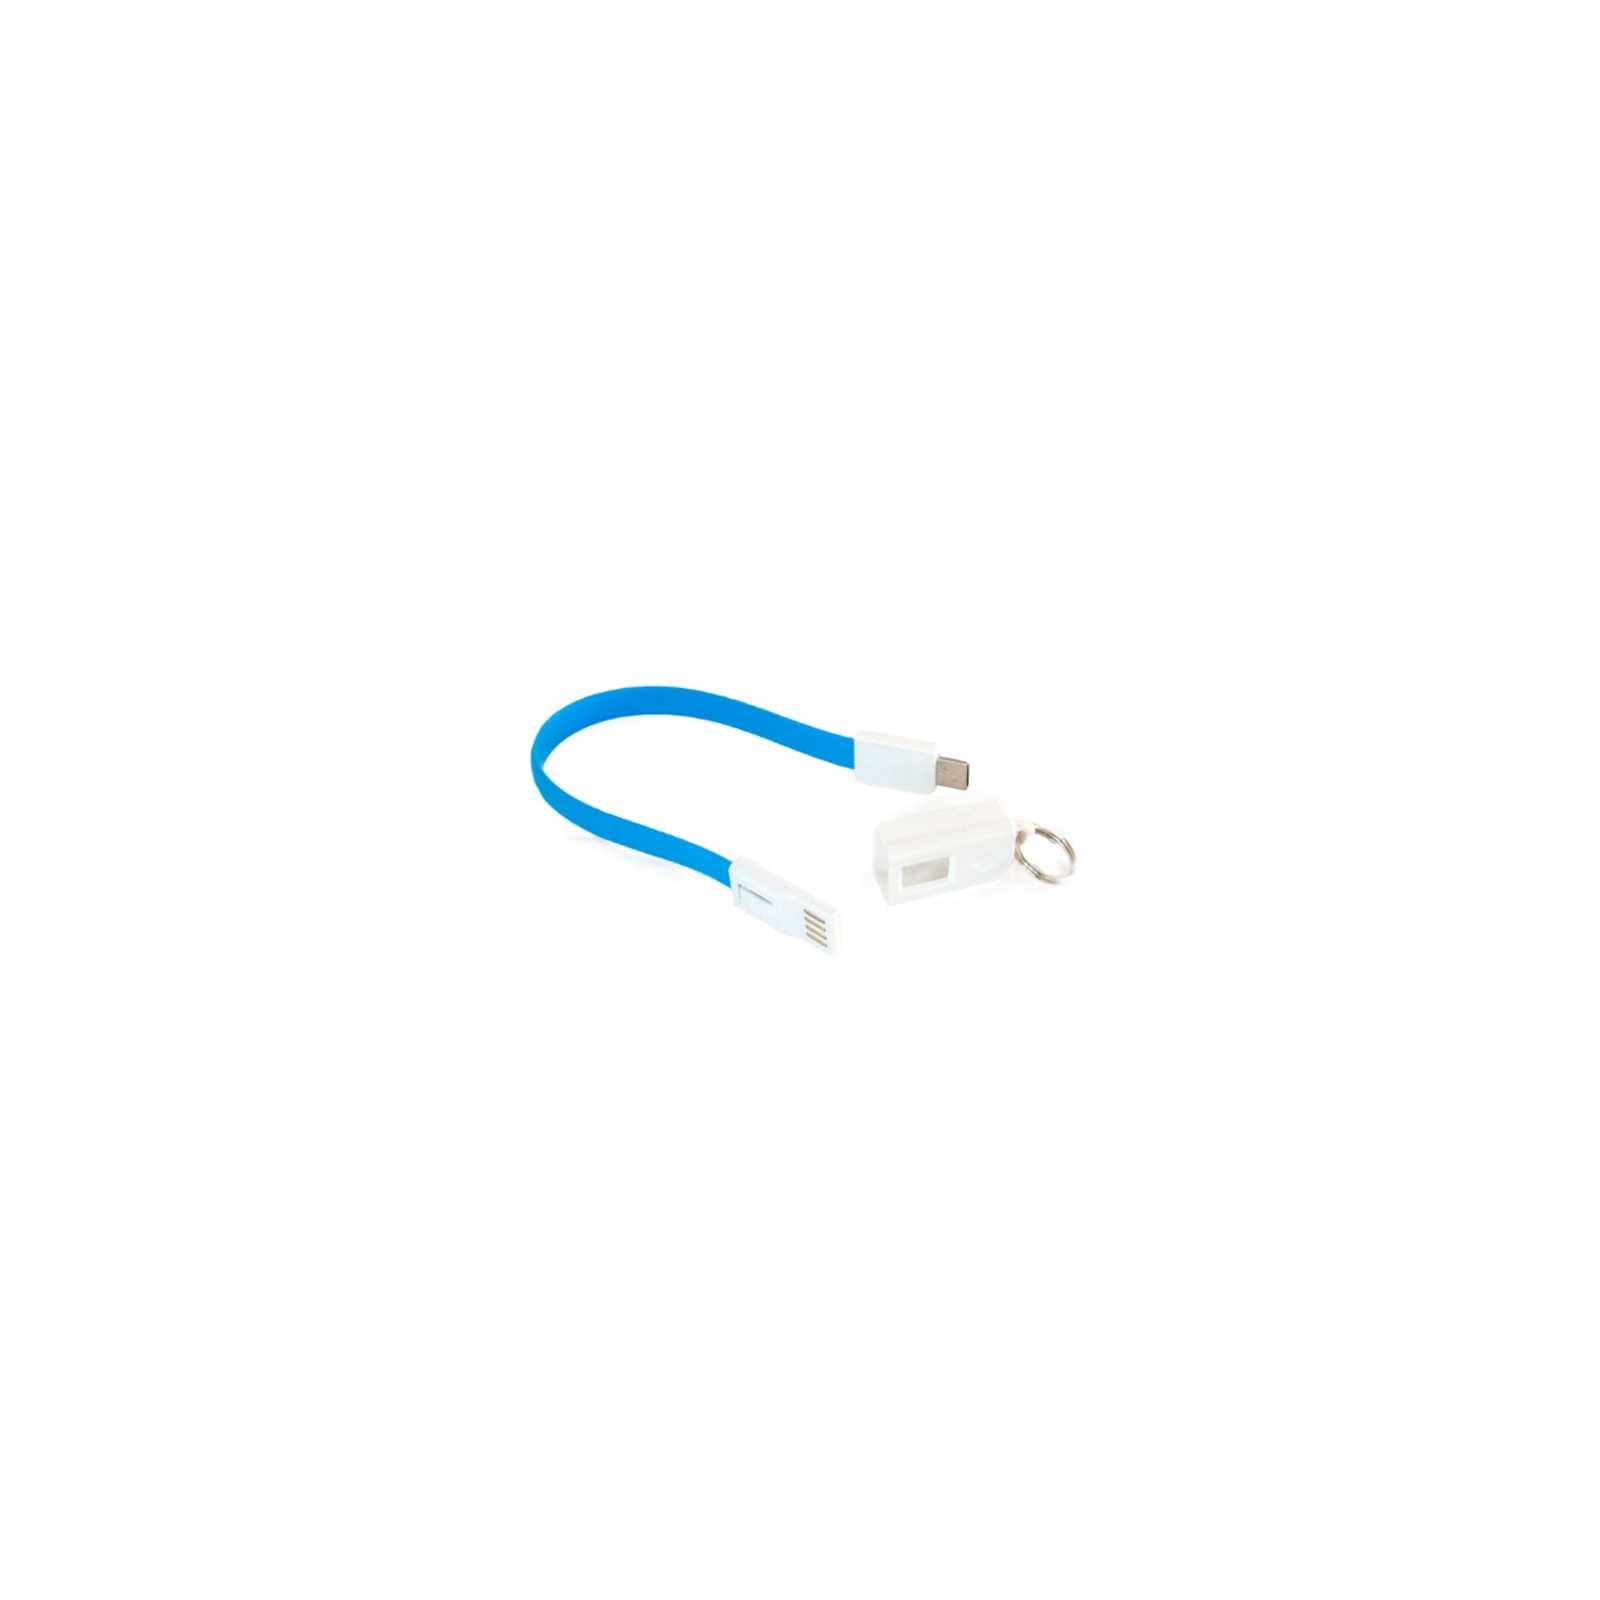 Дата кабель USB 2.0 AM to Type-C 0.18m pink Extradigital (KBU1788) изображение 2